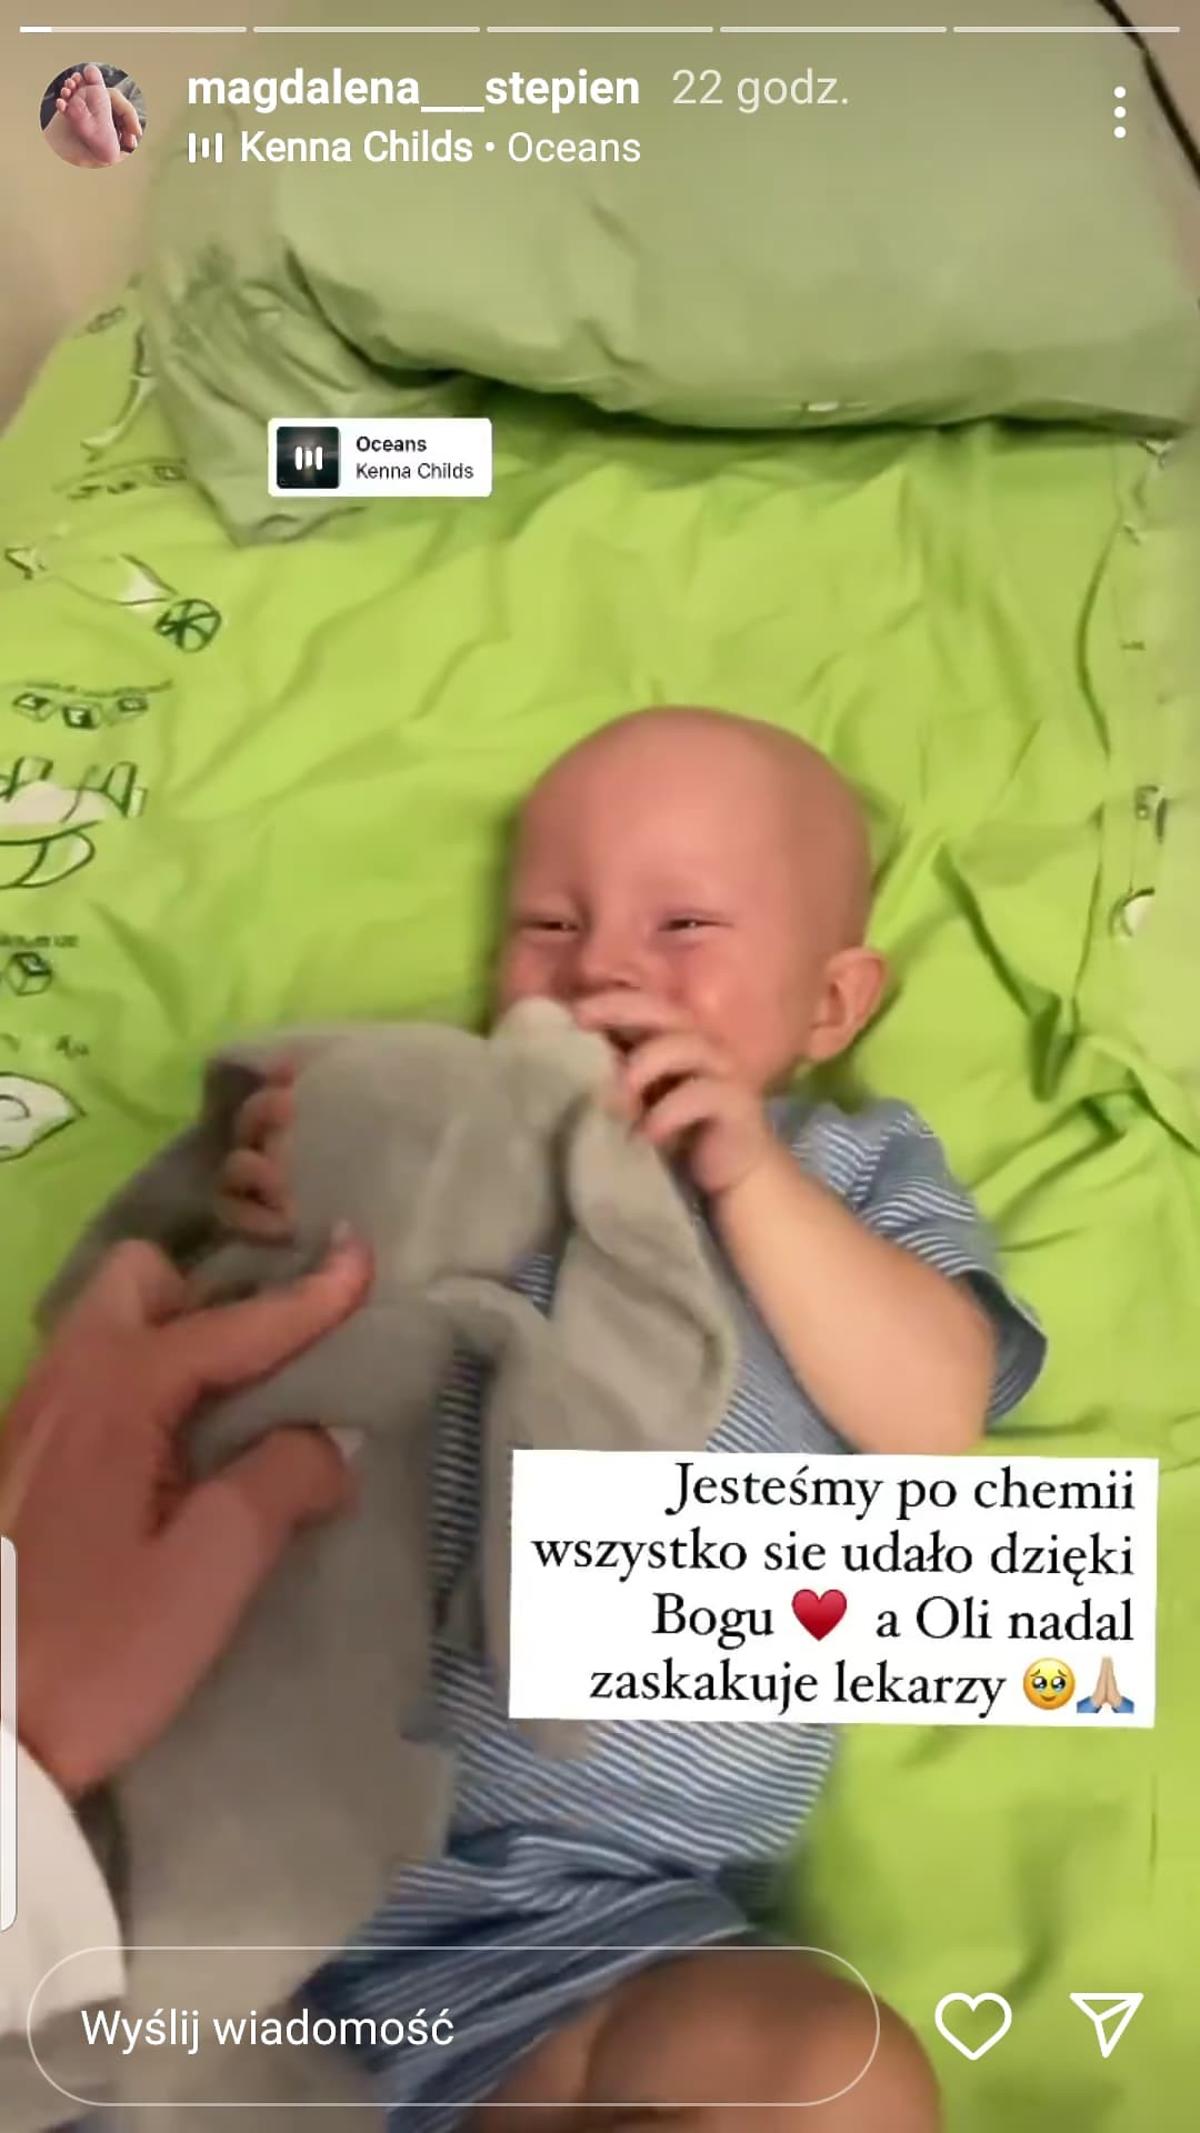 Magdalena Stępień pokazała najnowsze zdjęcie syna